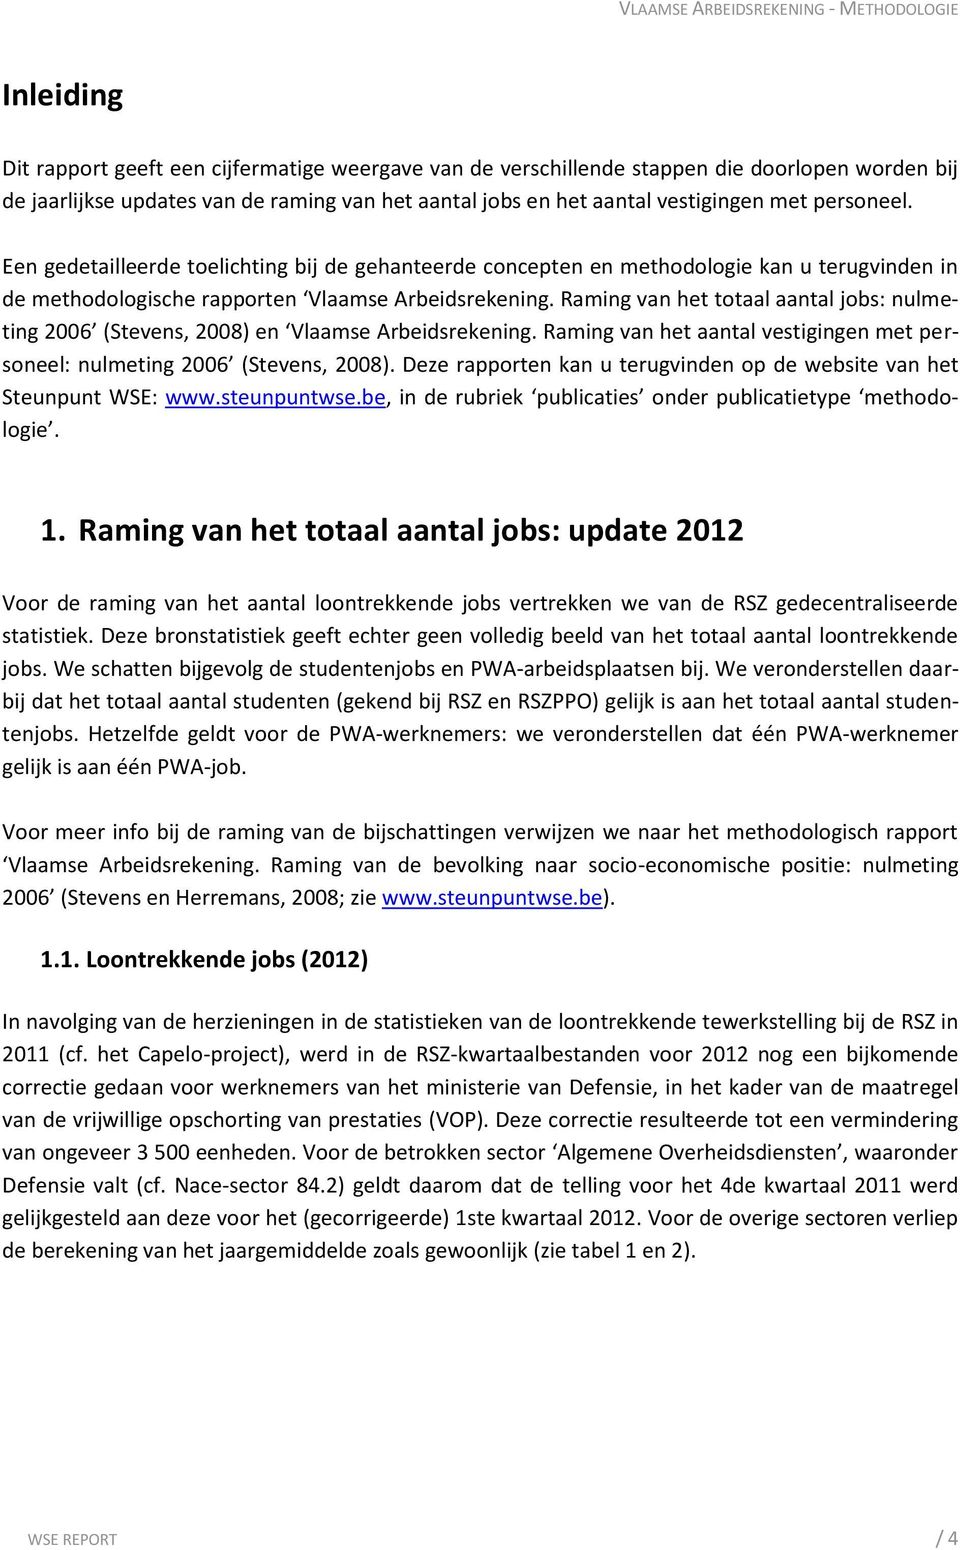 Raming van het totaal aantal jobs: nulmeting 2006 (Stevens, 2008) en Vlaamse Arbeidsrekening. Raming van het aantal vestigingen met personeel: nulmeting 2006 (Stevens, 2008).